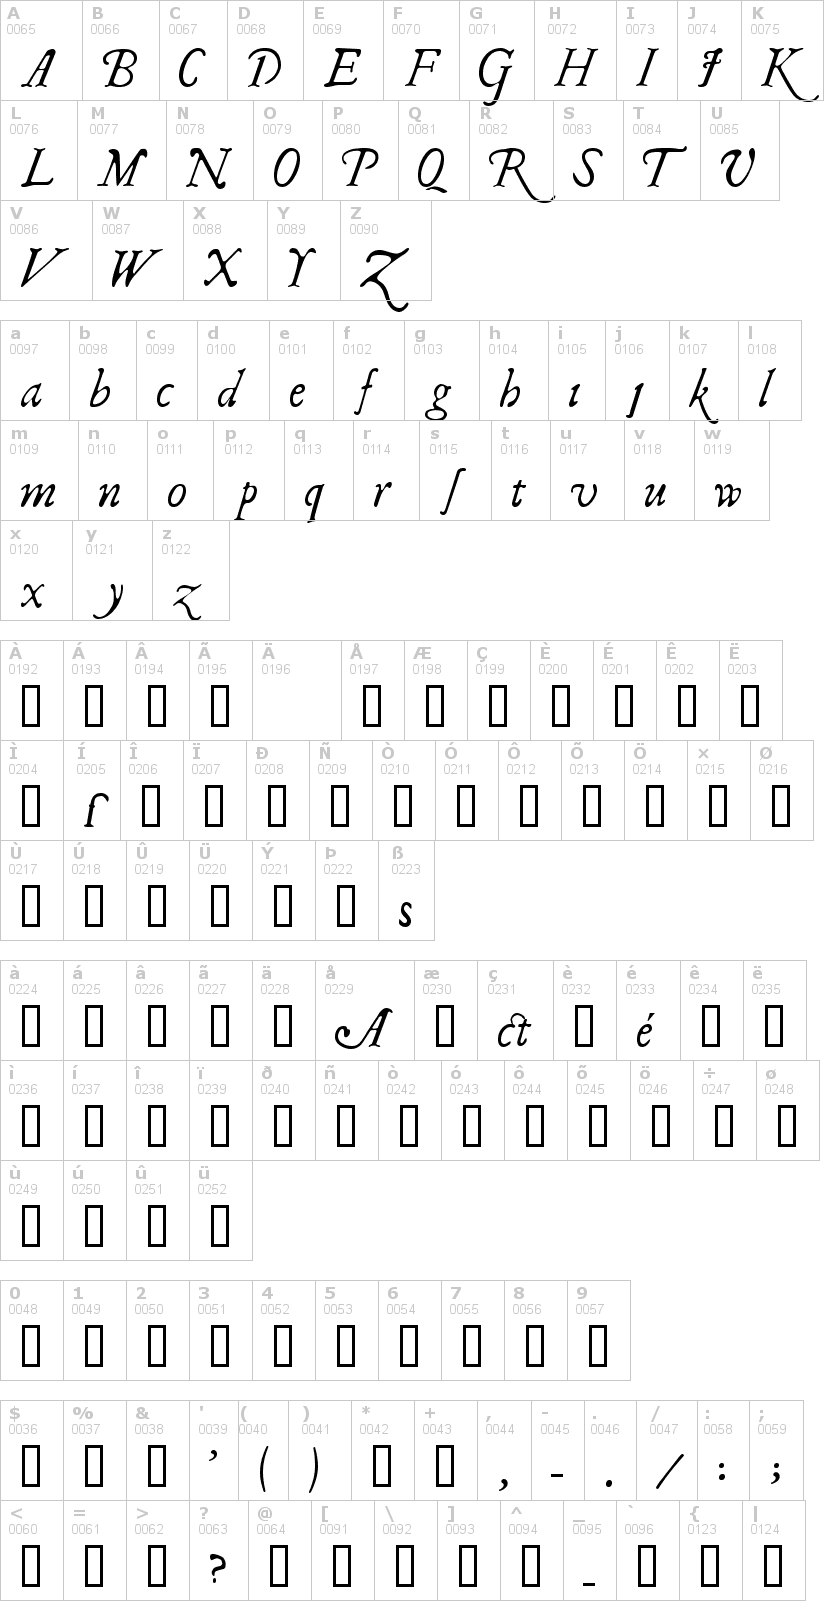 Lettere dell'alfabeto del font il-shake-fest con le quali è possibile realizzare adesivi prespaziati